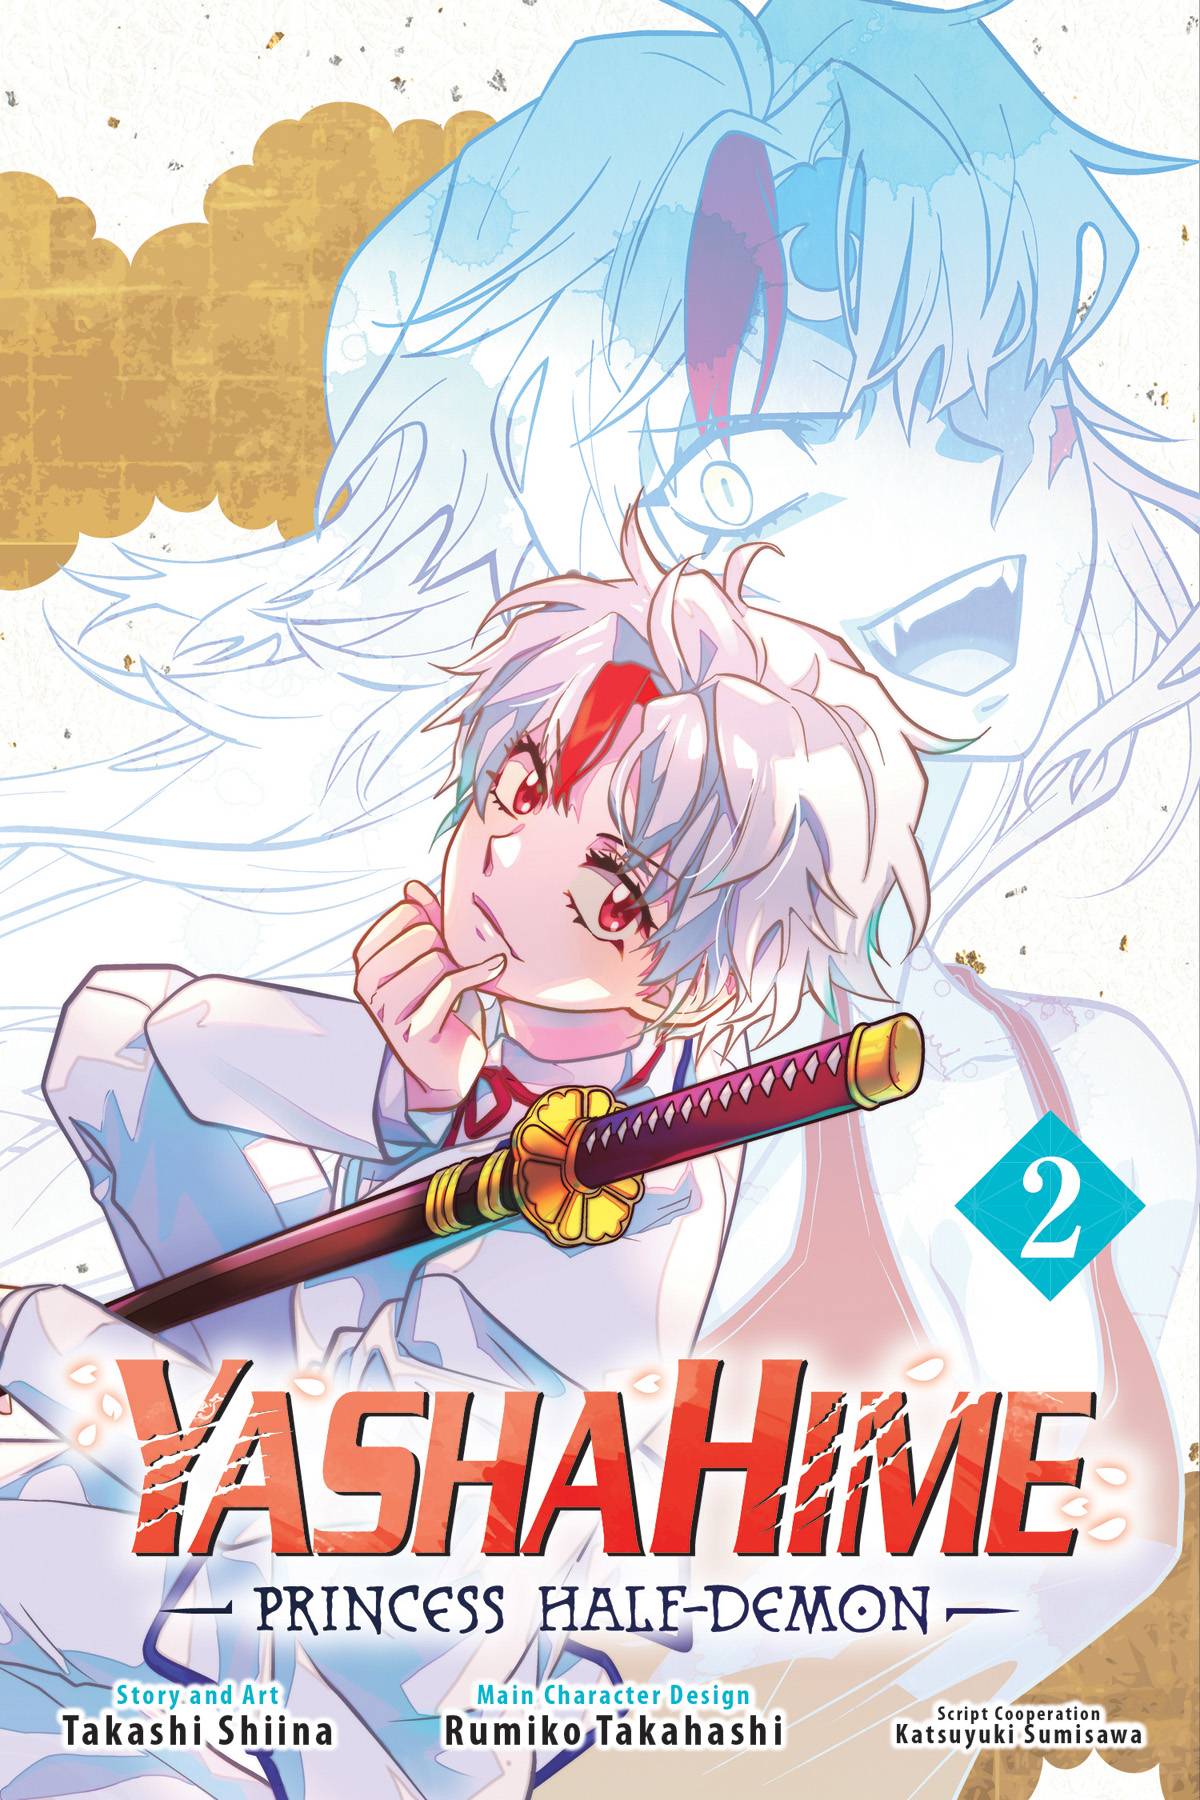 YASHAHIME PRINCESS HALF DEMON GN VOL 02 - Third Eye